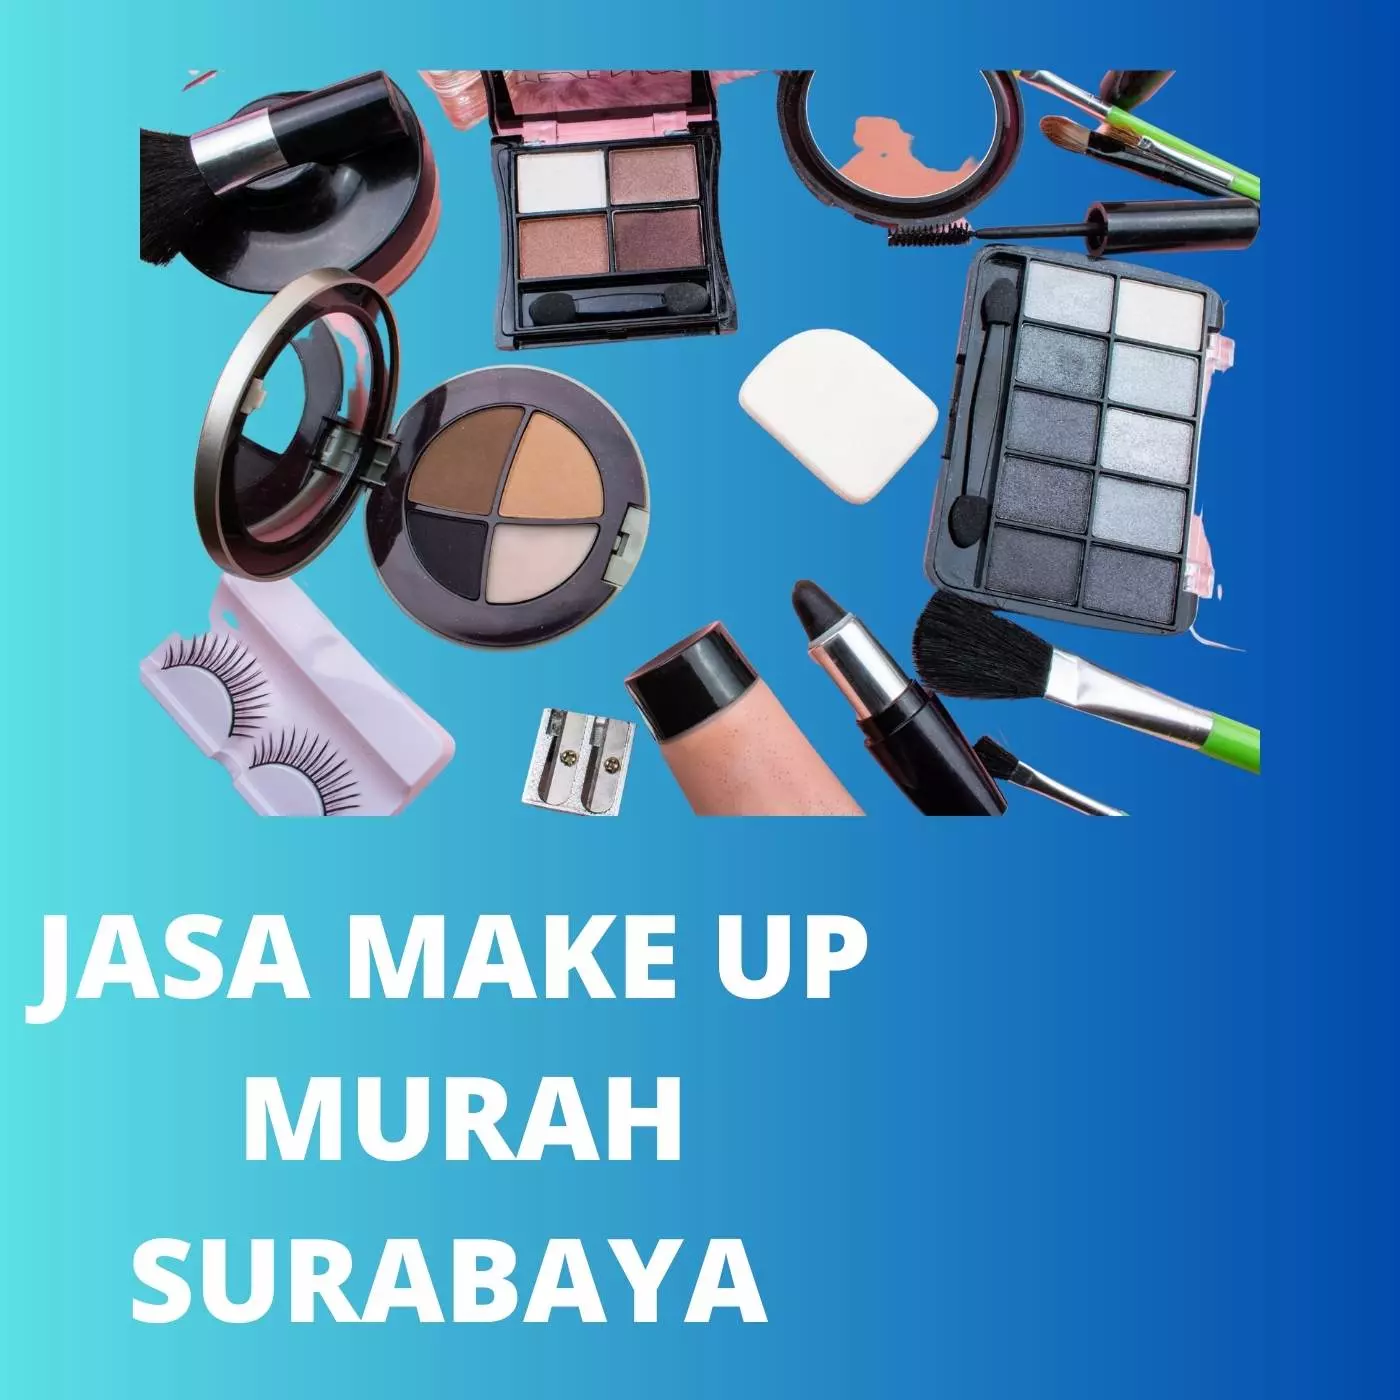 Jasa Make Up Murah Surabaya